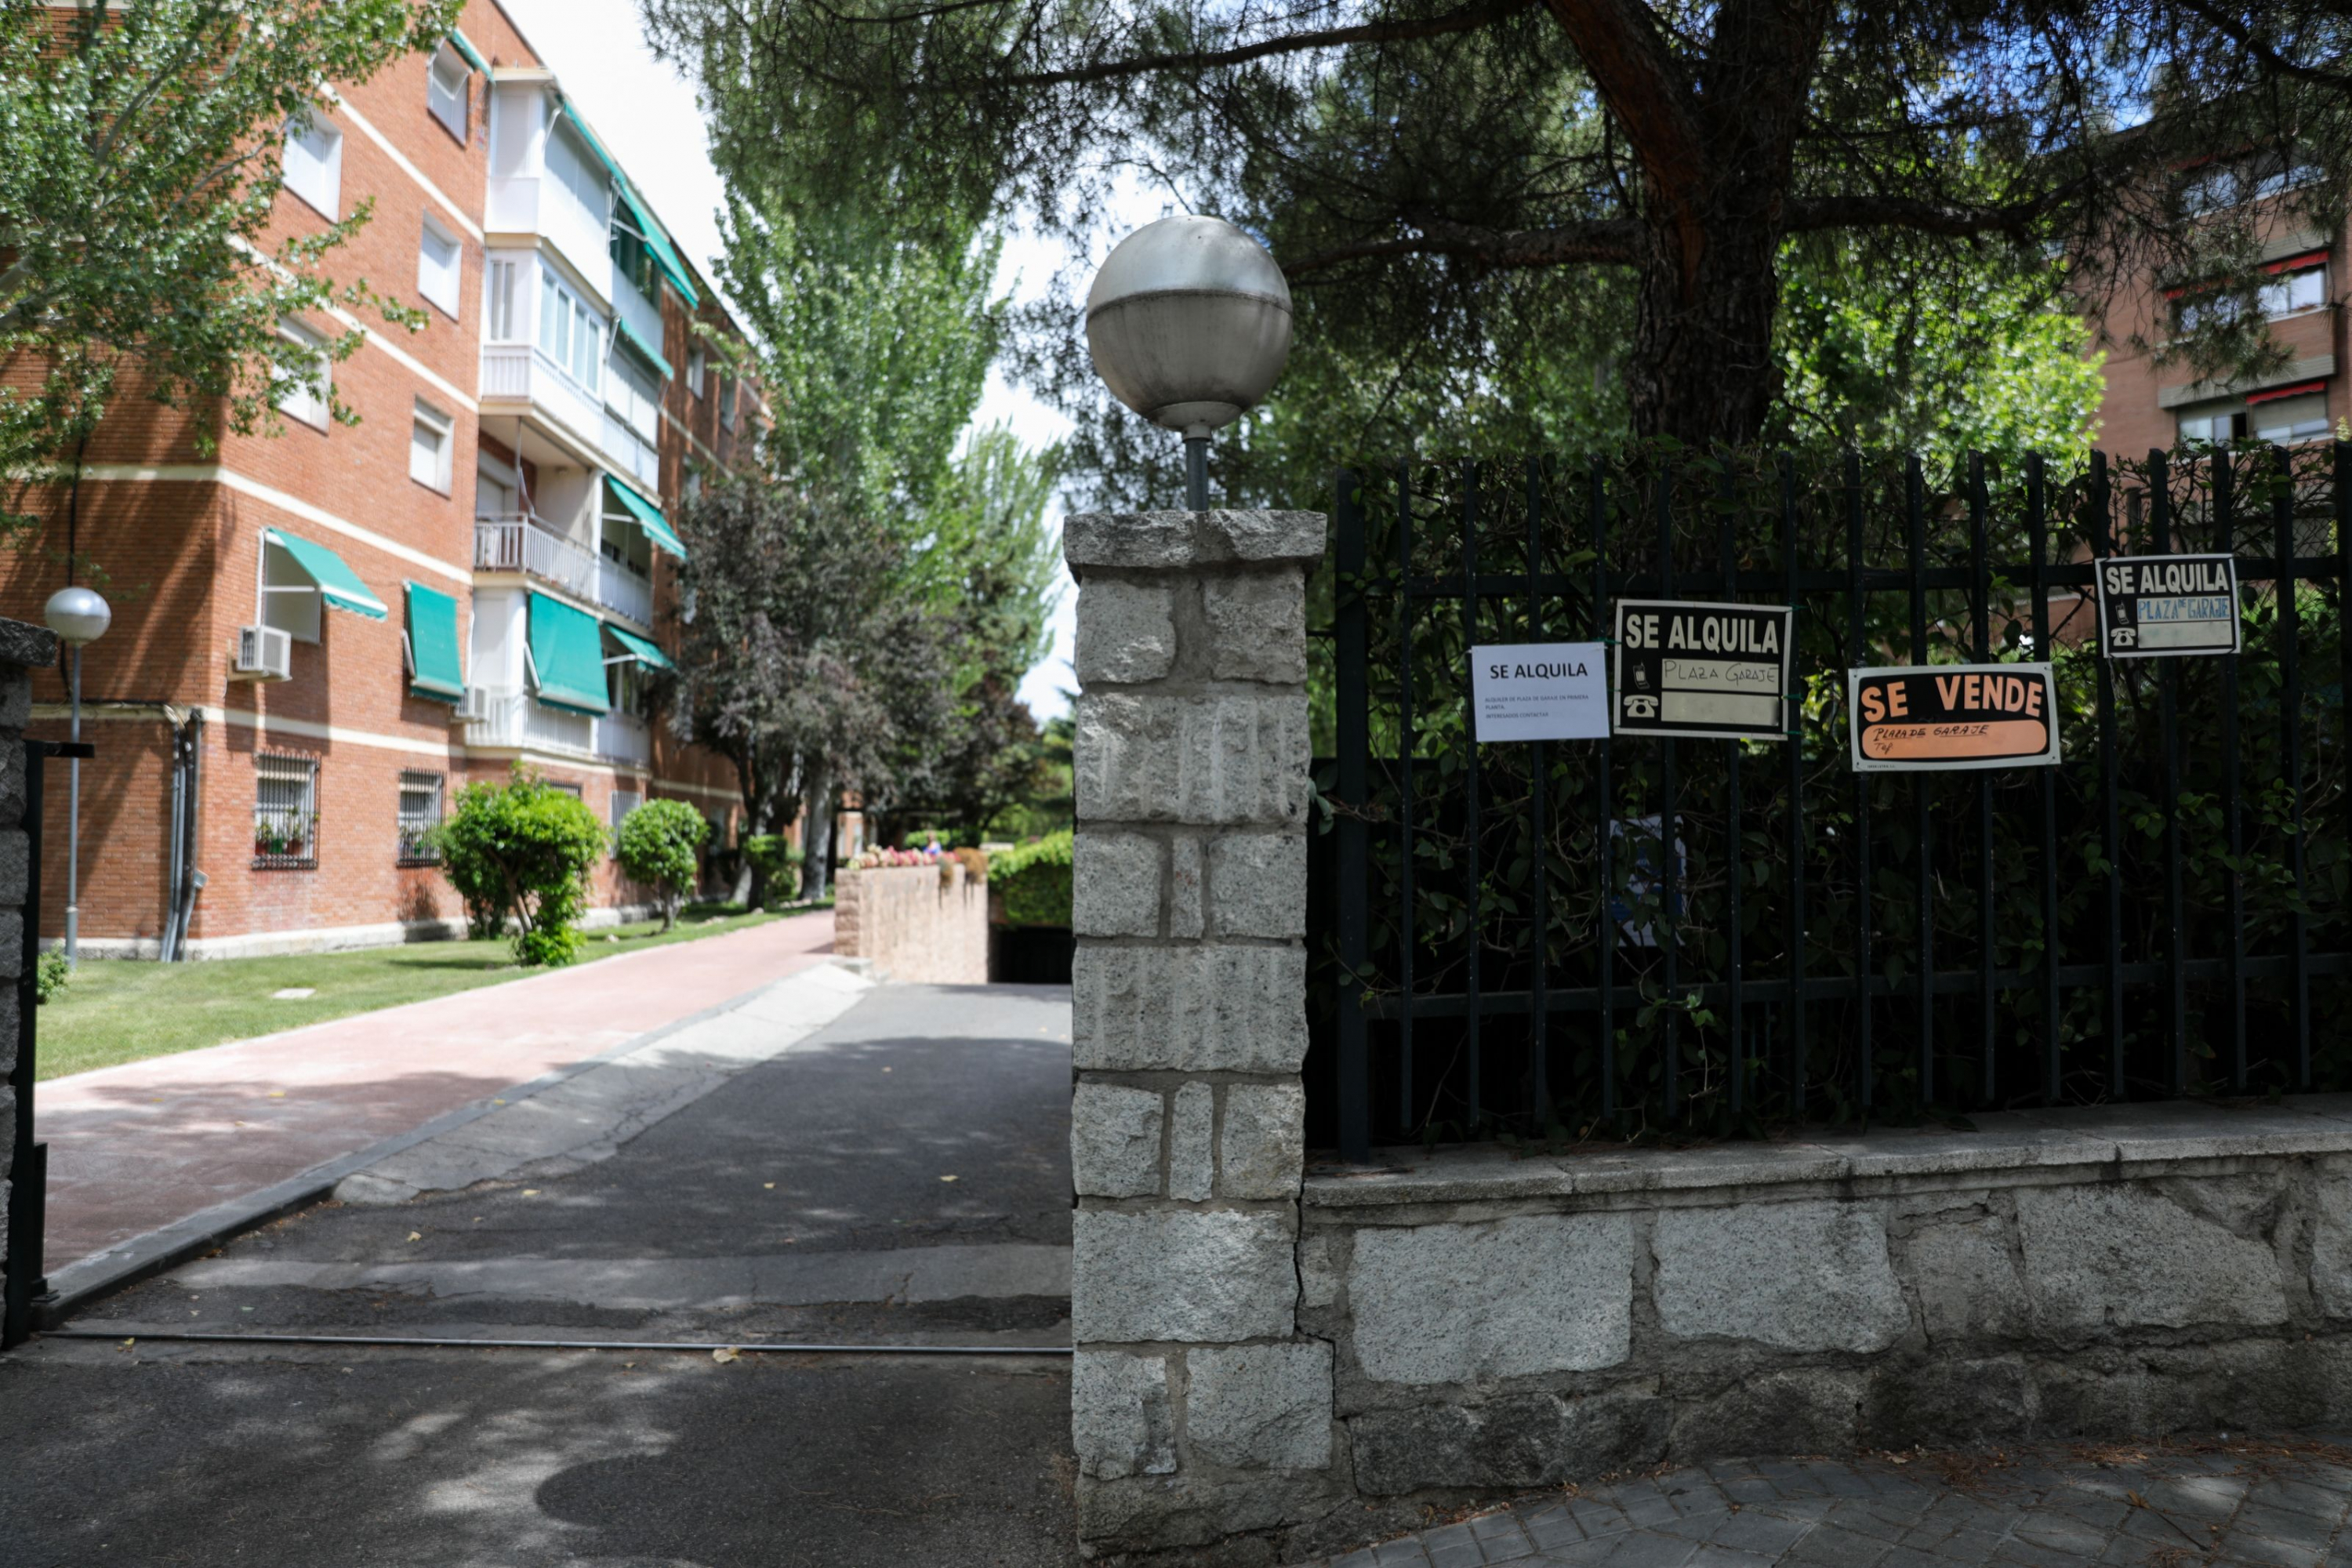 idealista necesita vender estas casas desde 11.000 euros: los tiene casi nuevos y por un simple requisito